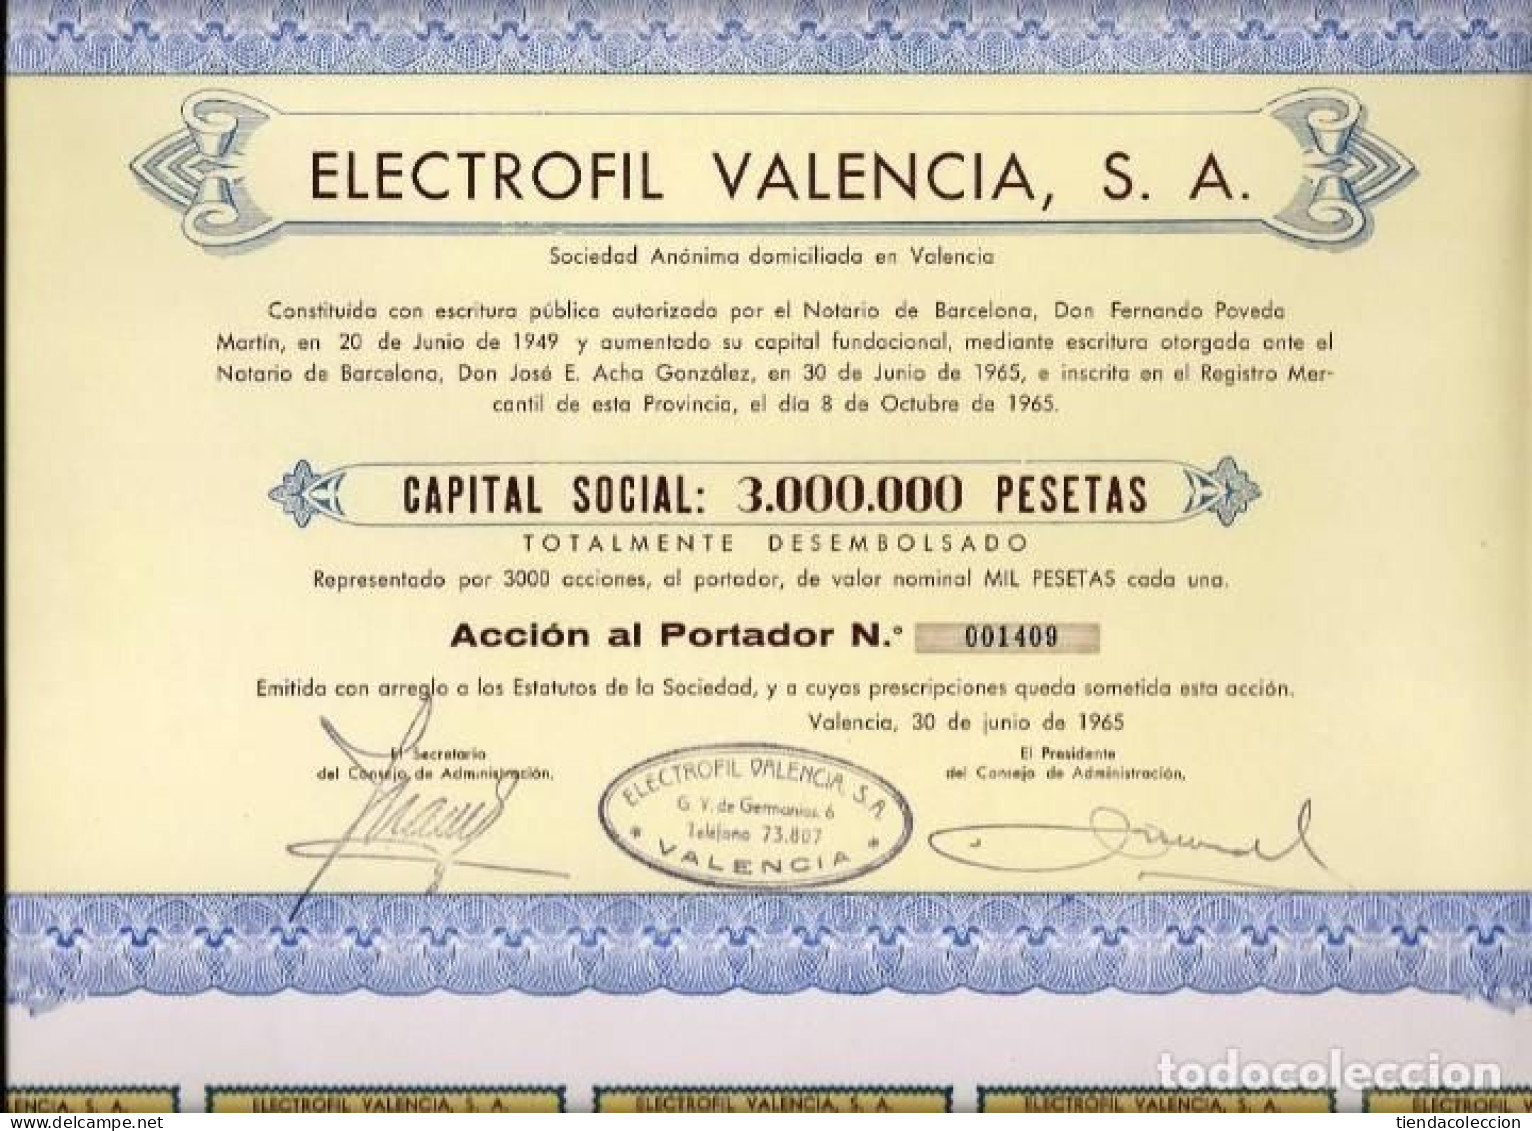 Electrofil Valencia, S. A. - Electricité & Gaz